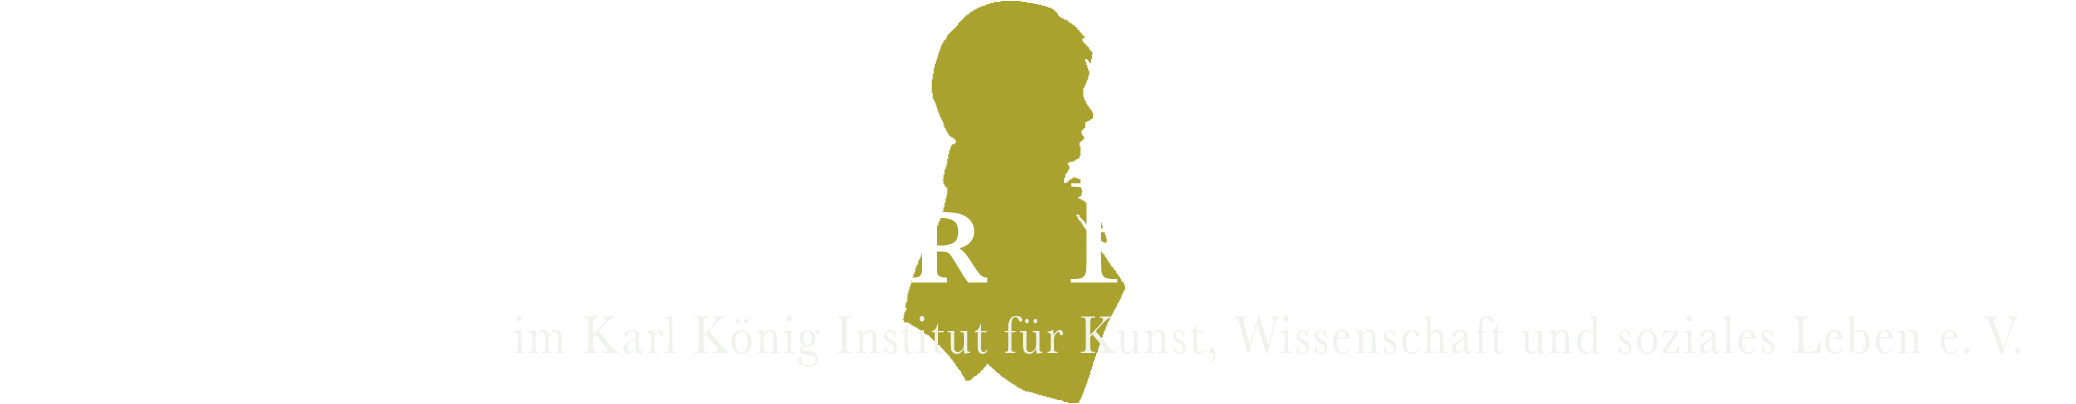 Kaspar Hauser Forschungskreis